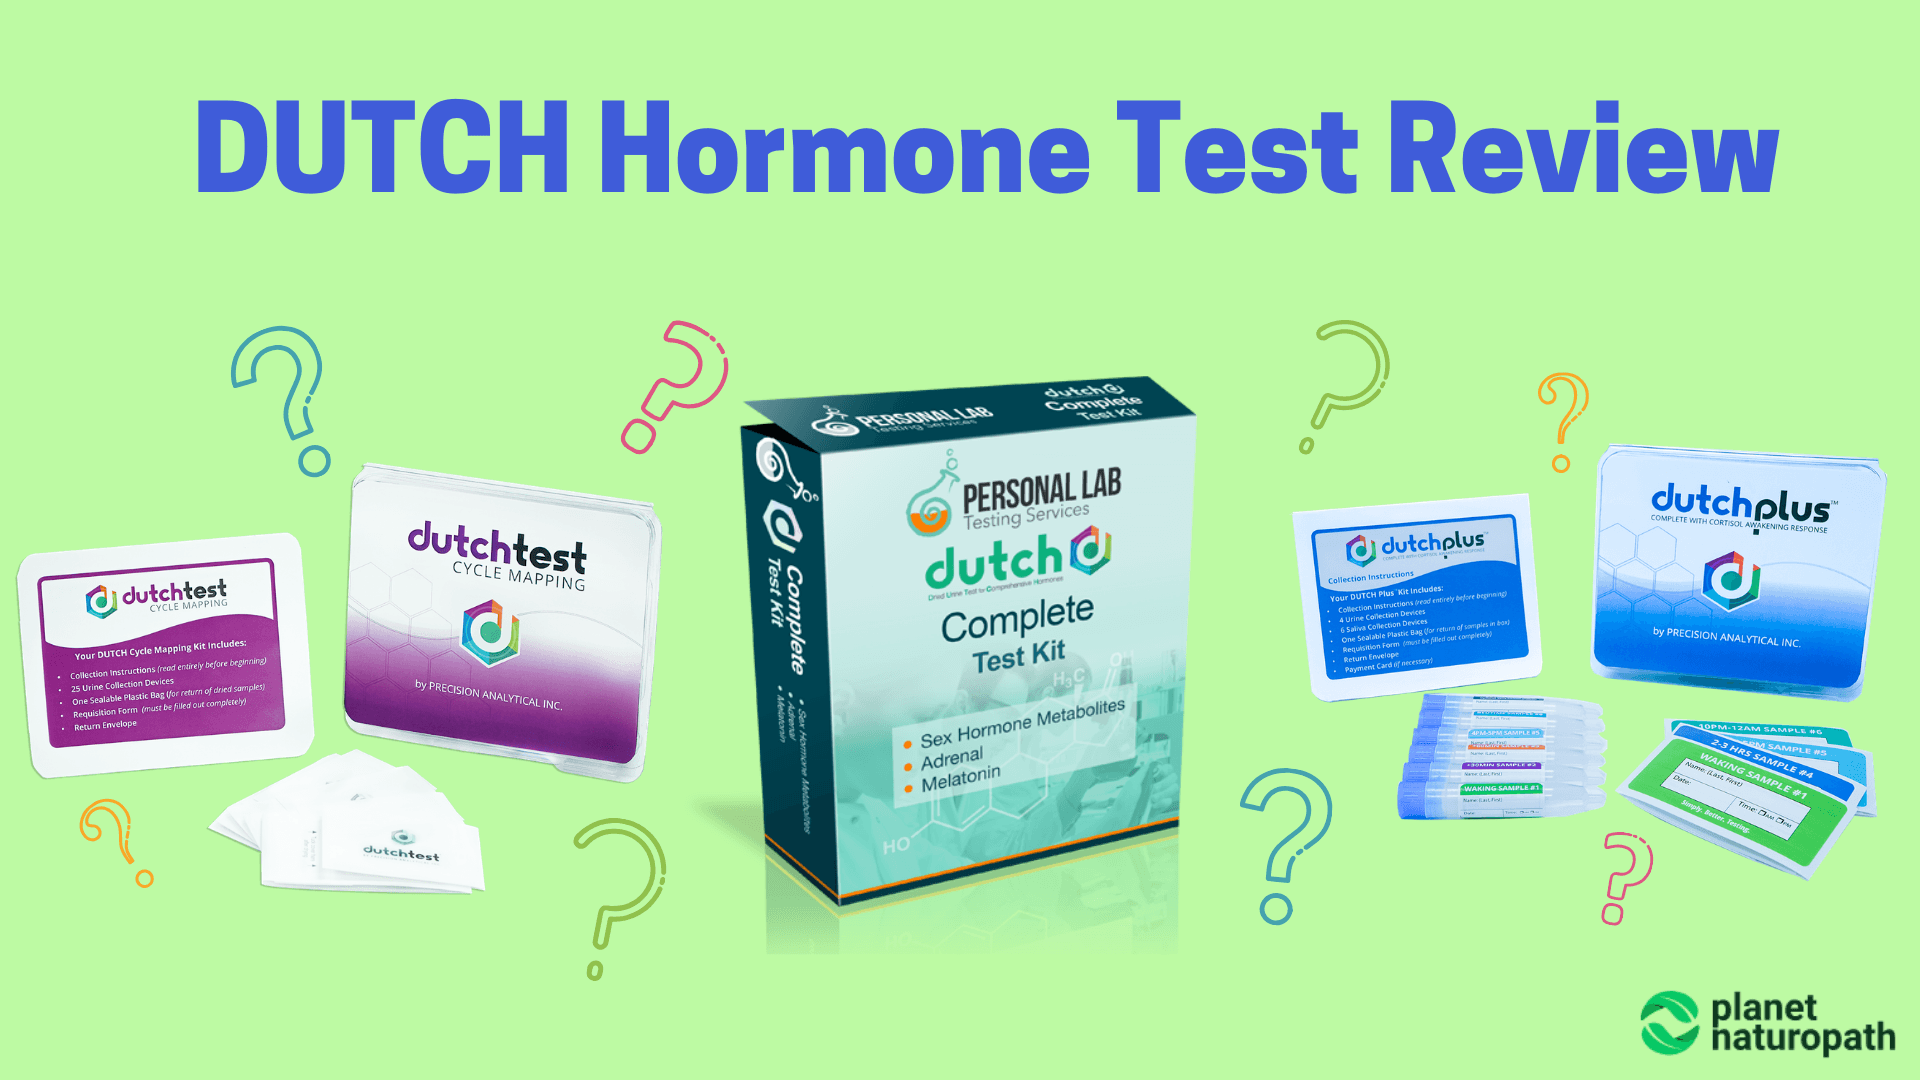 DUTCH Hormone Test Review